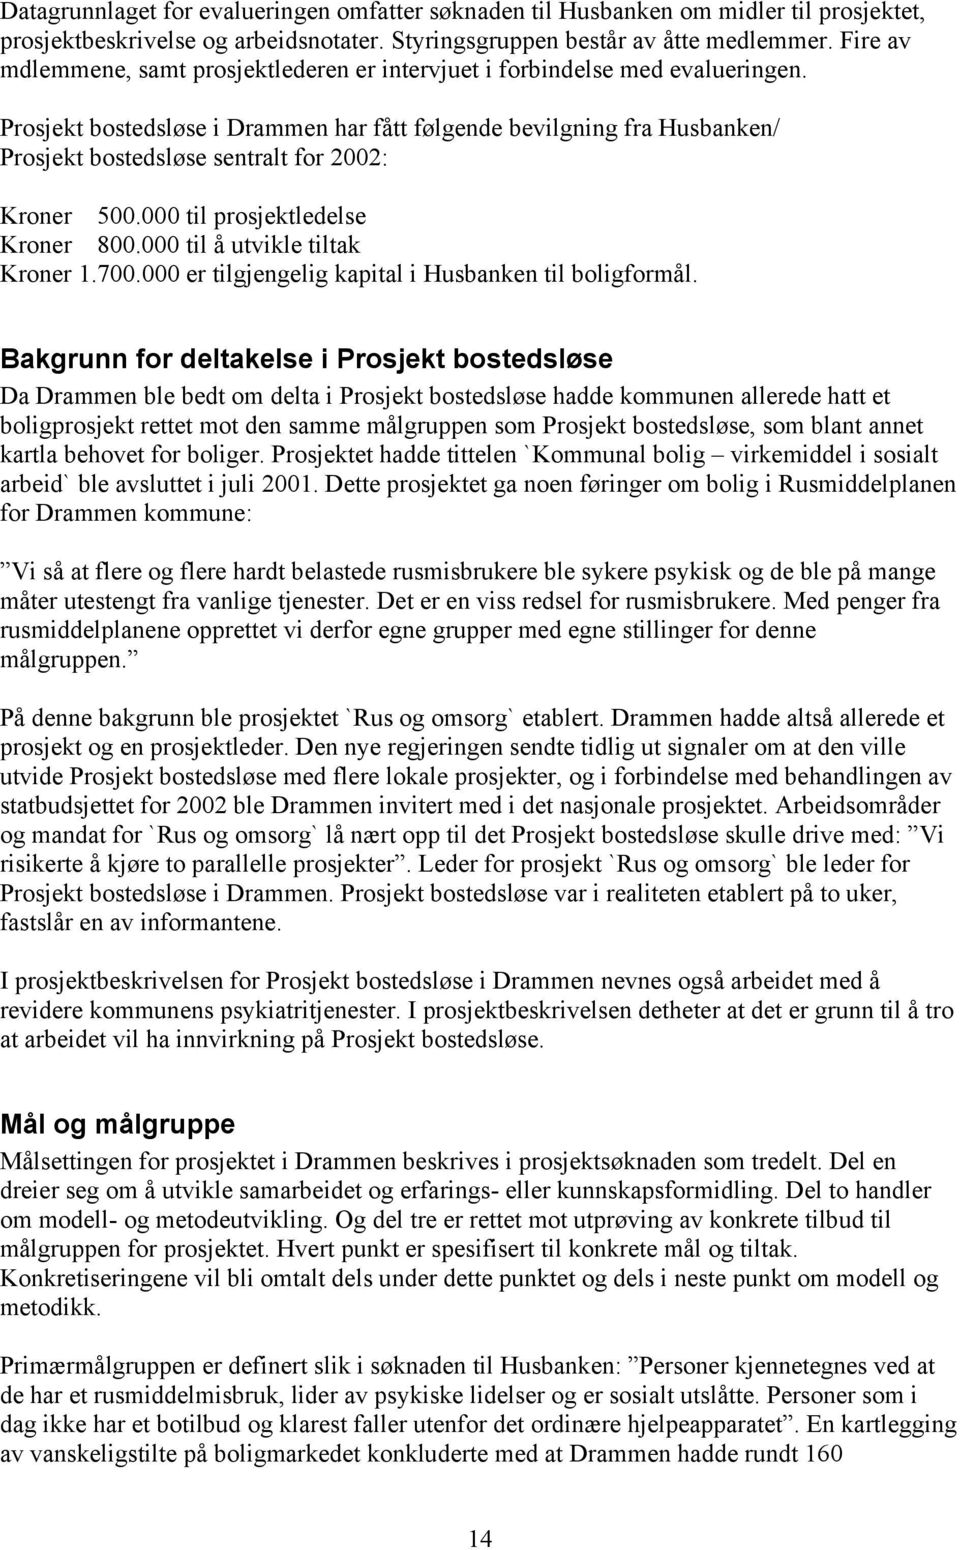 Prosjekt bostedsløse i Drammen har fått følgende bevilgning fra Husbanken/ Prosjekt bostedsløse sentralt for 2002: Kroner 500.000 til prosjektledelse Kroner 800.000 til å utvikle tiltak Kroner 1.700.